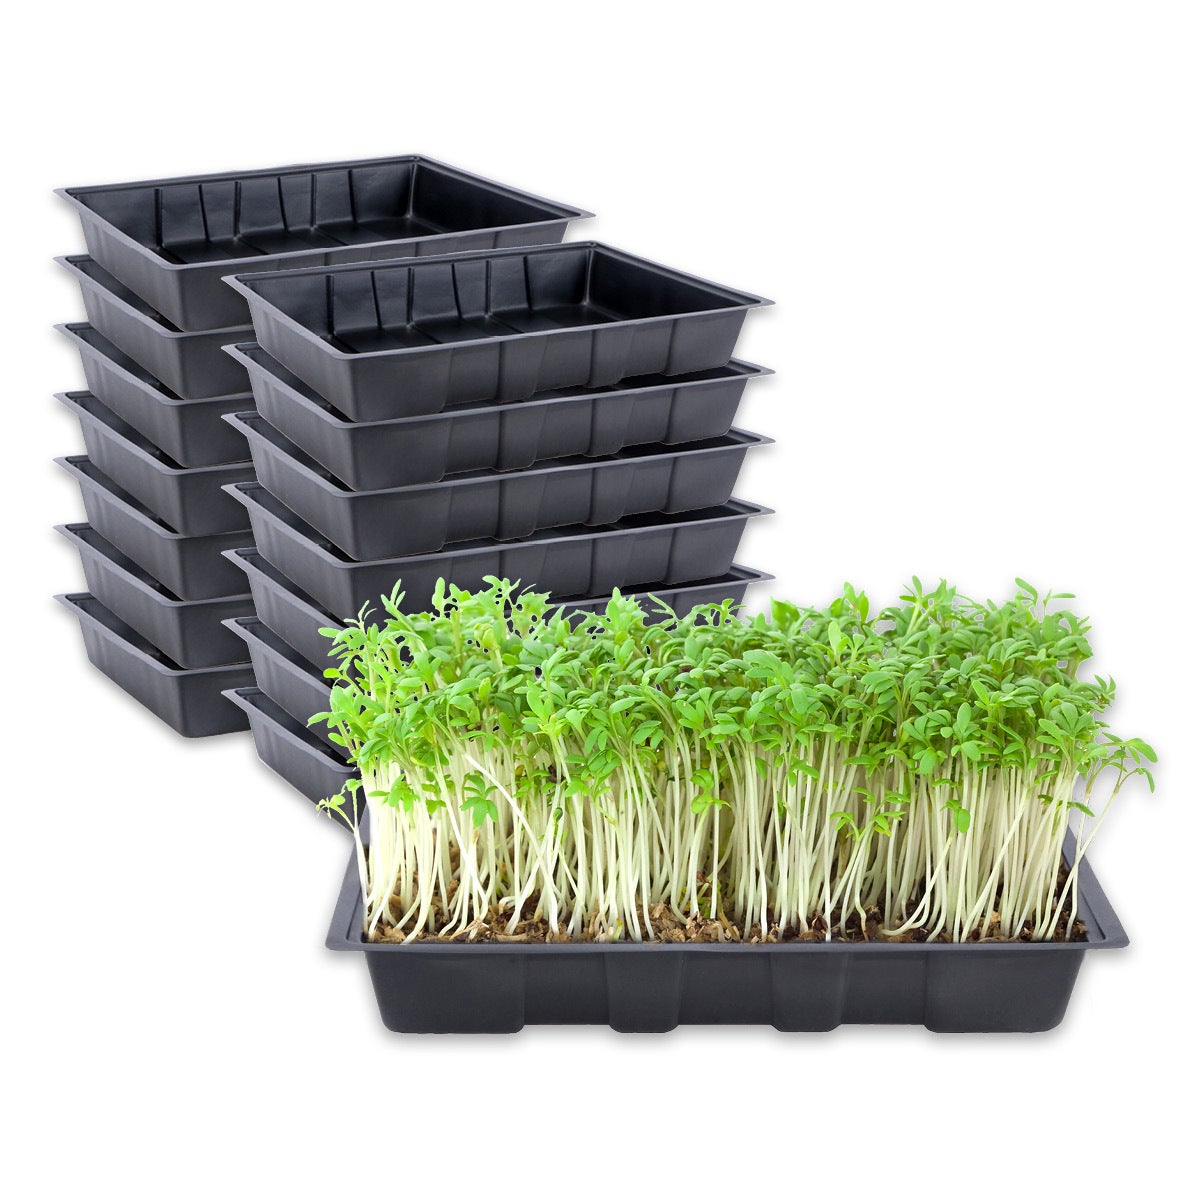 Garden Greens 15PK Seedling Trays Lightweight Durable Reusable 24 x 35.5cm